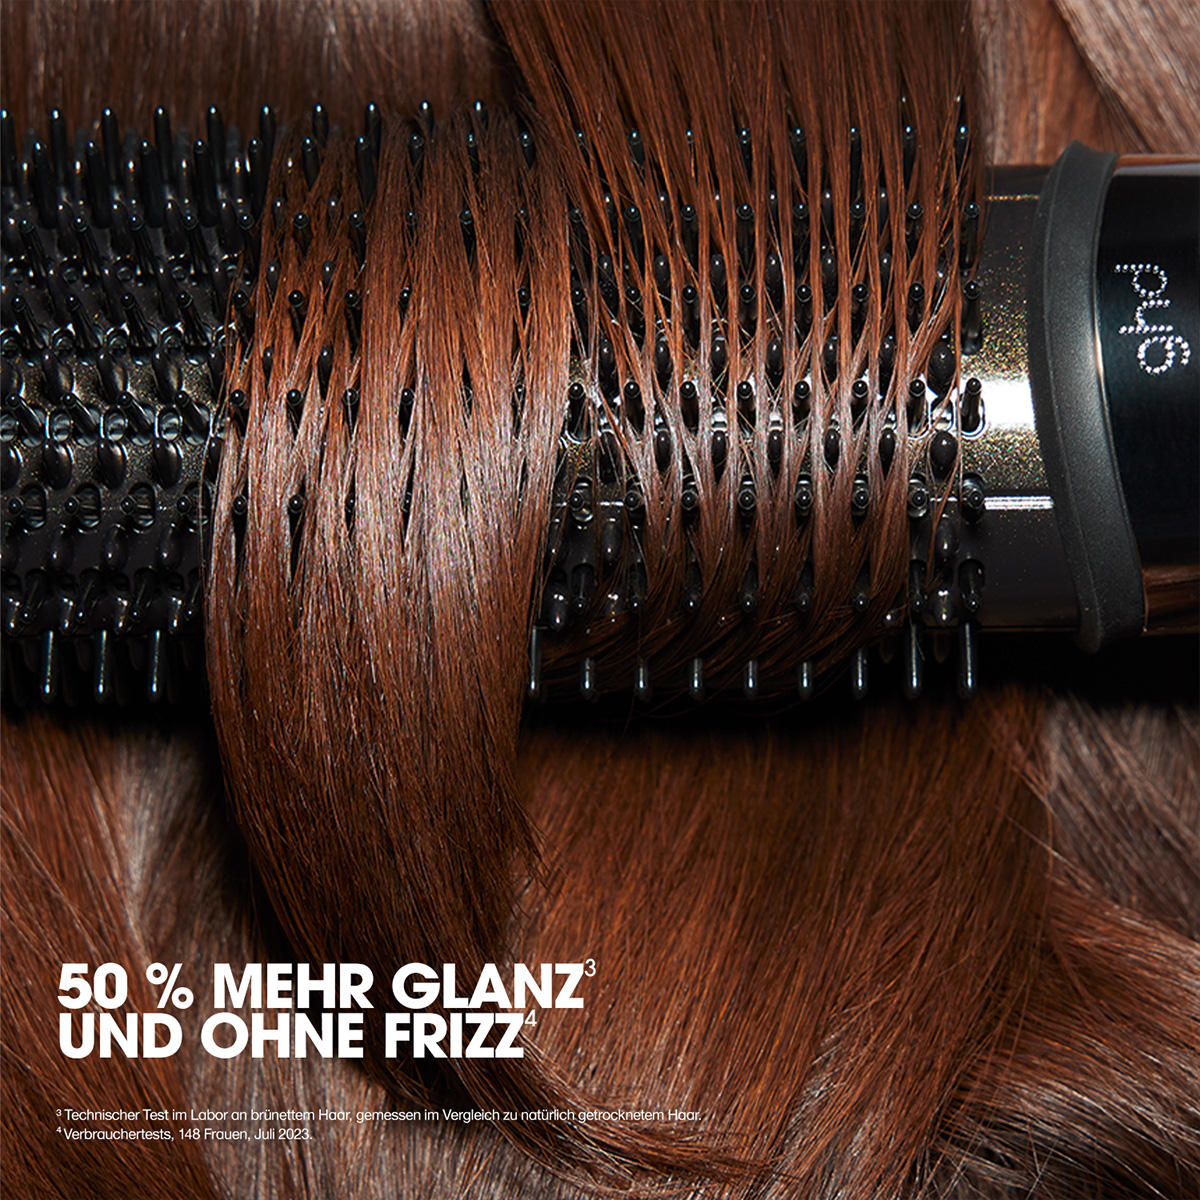 ghd duet blowdry Hair Dryer Brush Salonausführung schwarz - 4